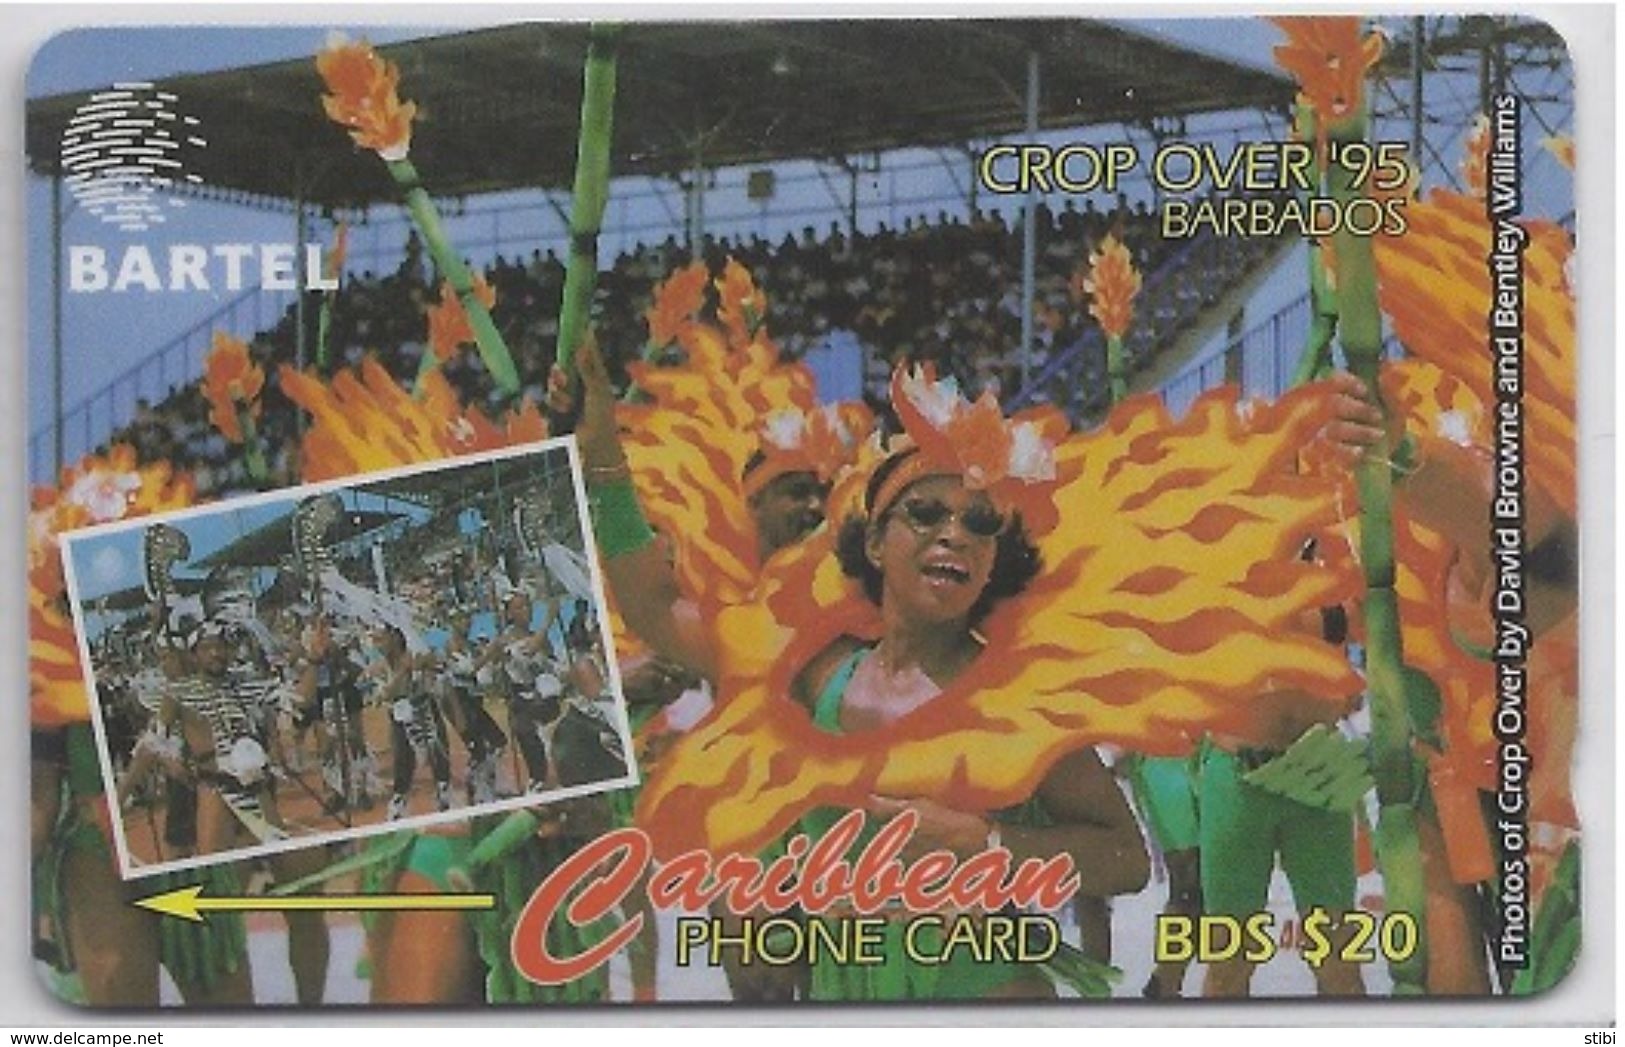 BARBADOS - CROP OVER '95 - 16CBDA - Barbados (Barbuda)